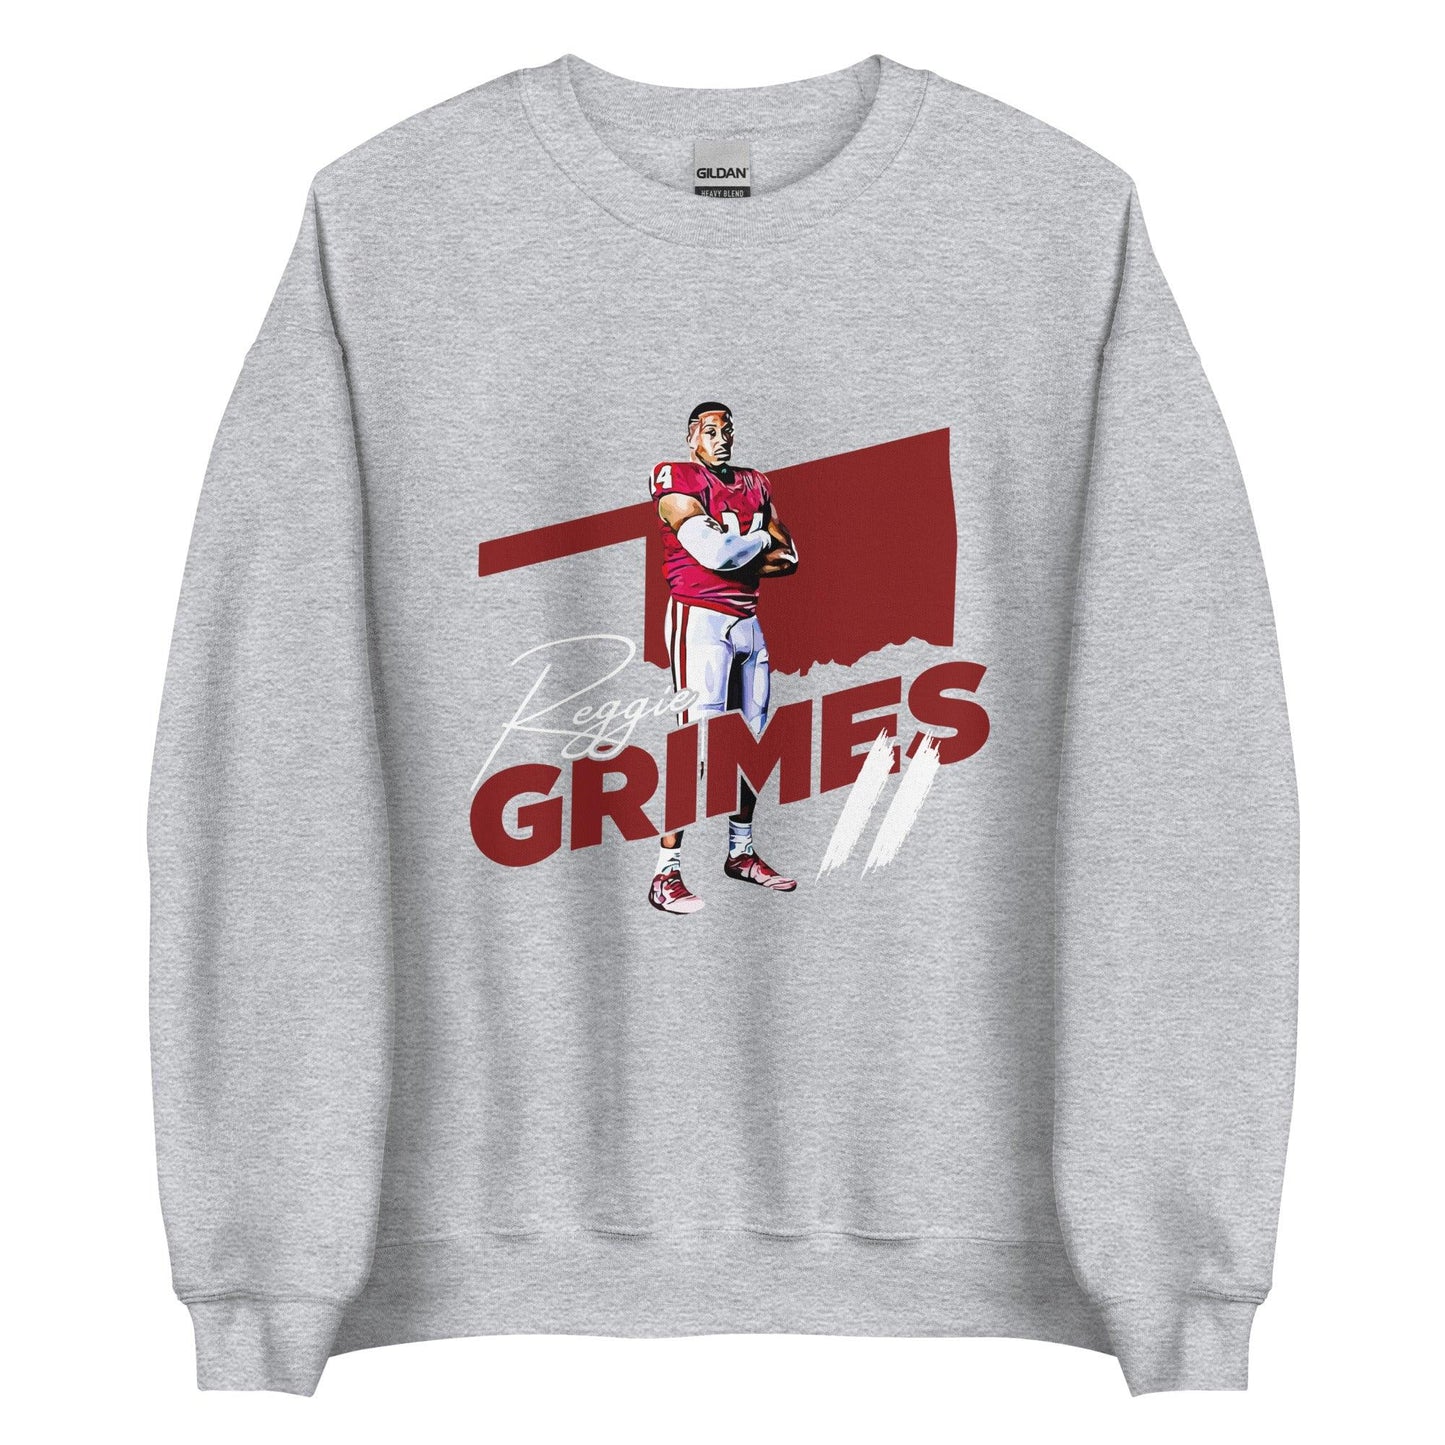 Reggie Grimes II "OKL" Sweatshirt - Fan Arch